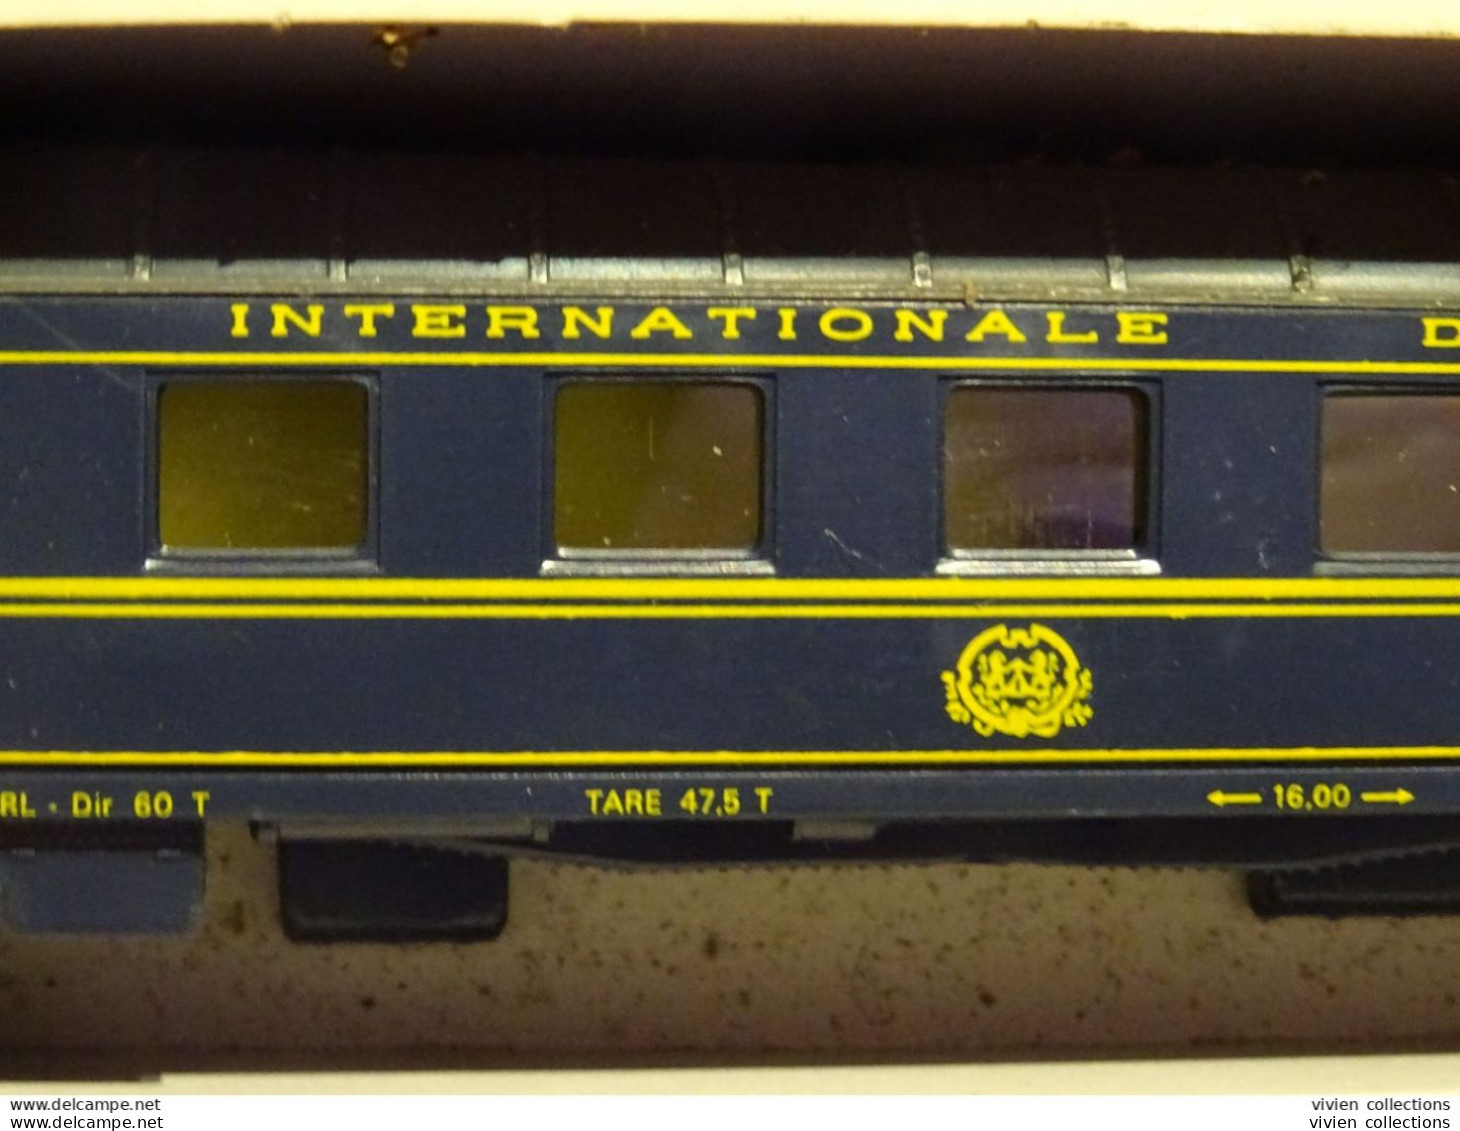 Train électrique échelle HO 2 wagons compagnie internationale des wagons lits Jouef ref 5600 / 5620 en boites d'origines